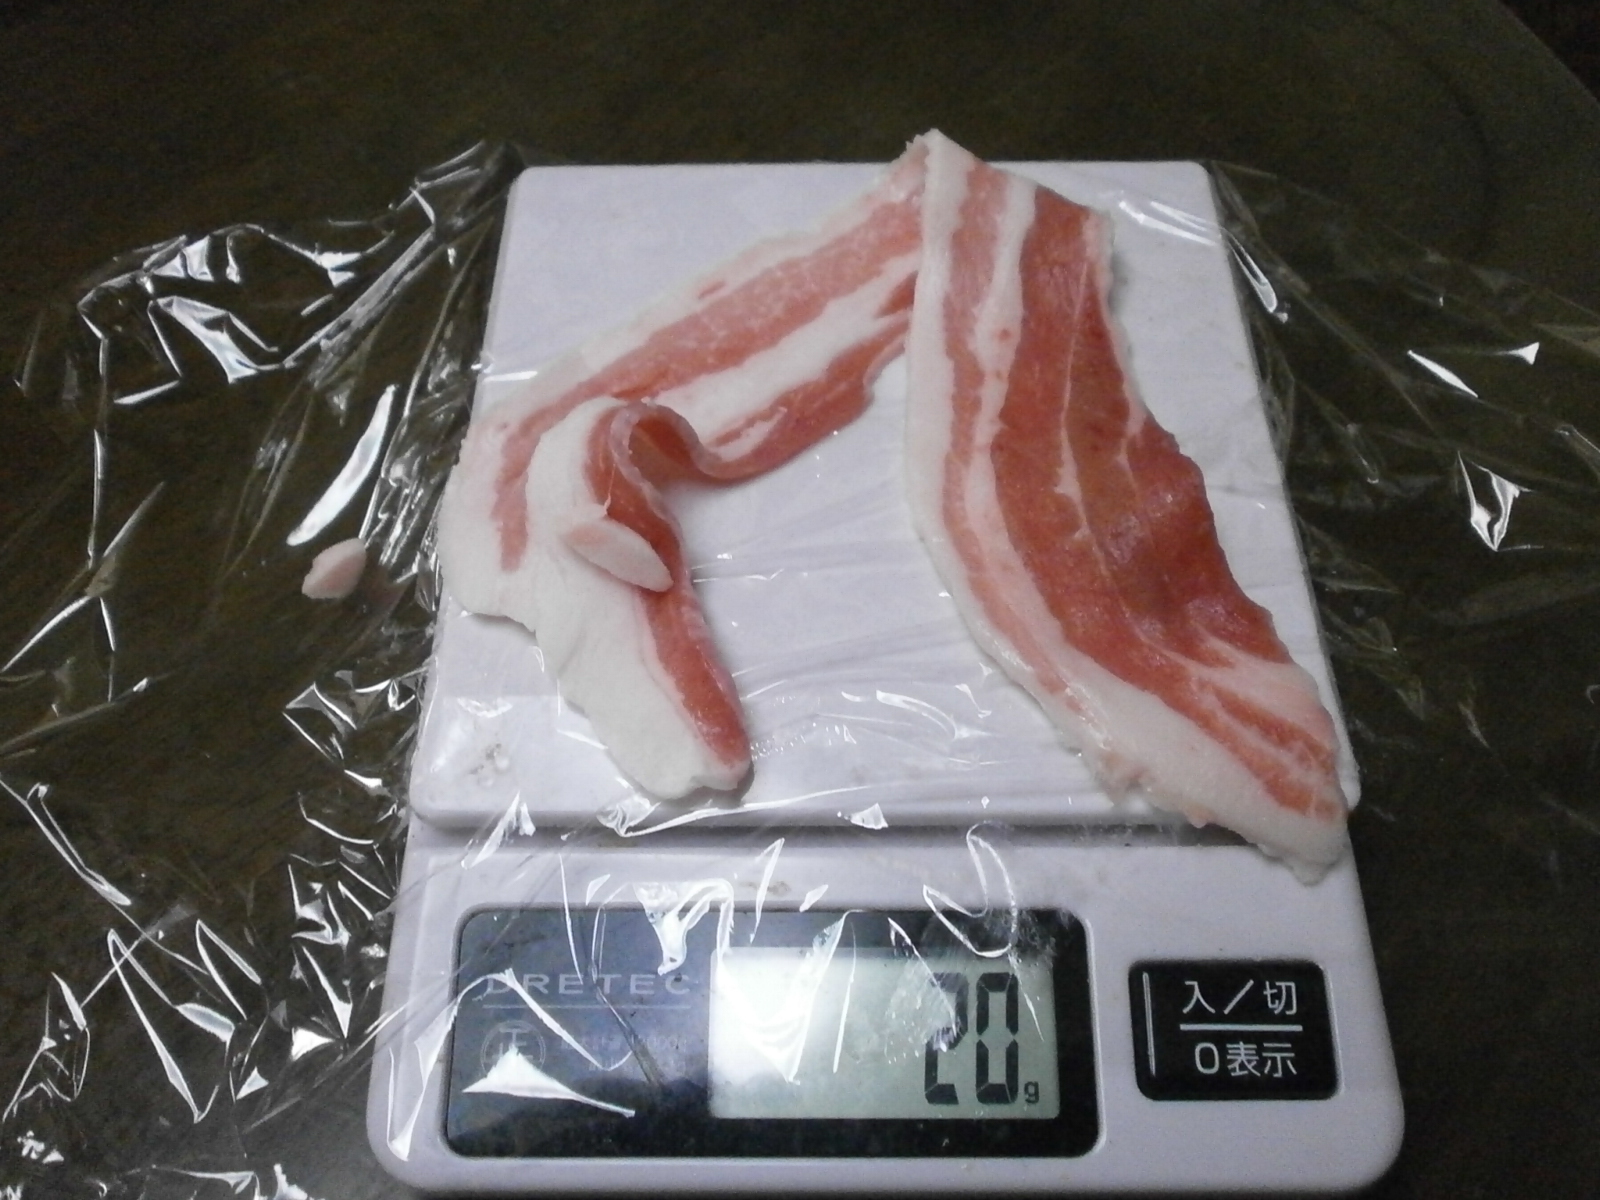 Rose pork (sliced) (155g-20g)